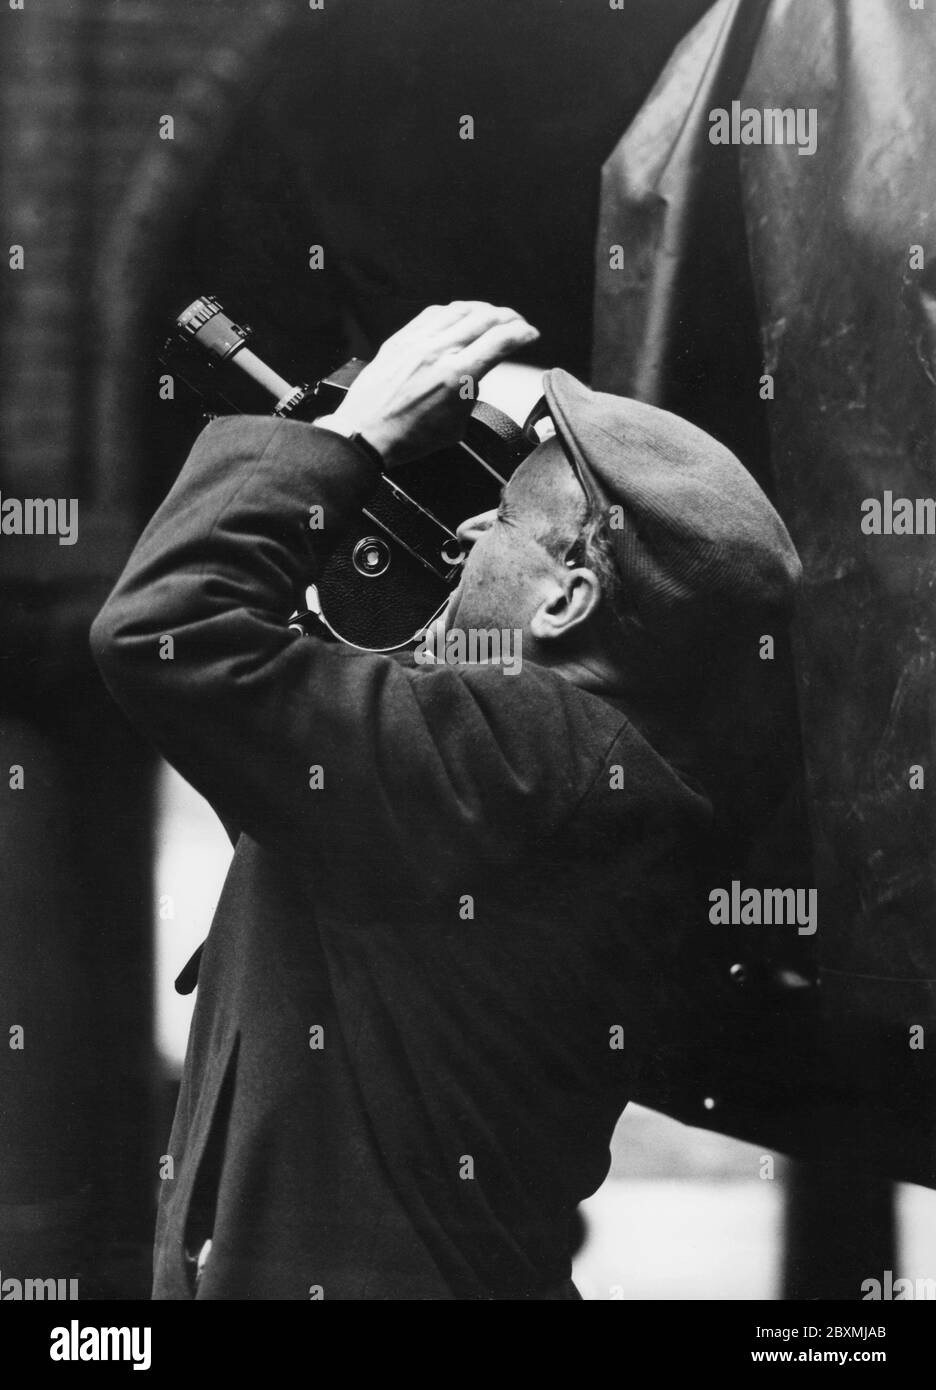 Riprese negli anni '60. La celebrazione di Gustaf VI Adolf del re svedese e di lui che ha 80 anni sta continuando. Durante l'evento, ha ritratto un cameraman con la sua fotocamera. La telecamera ha prodotto una pellicola analogica ed è stata mostrata su un proiettore di pellicola. Svezia 1962 Foto Stock